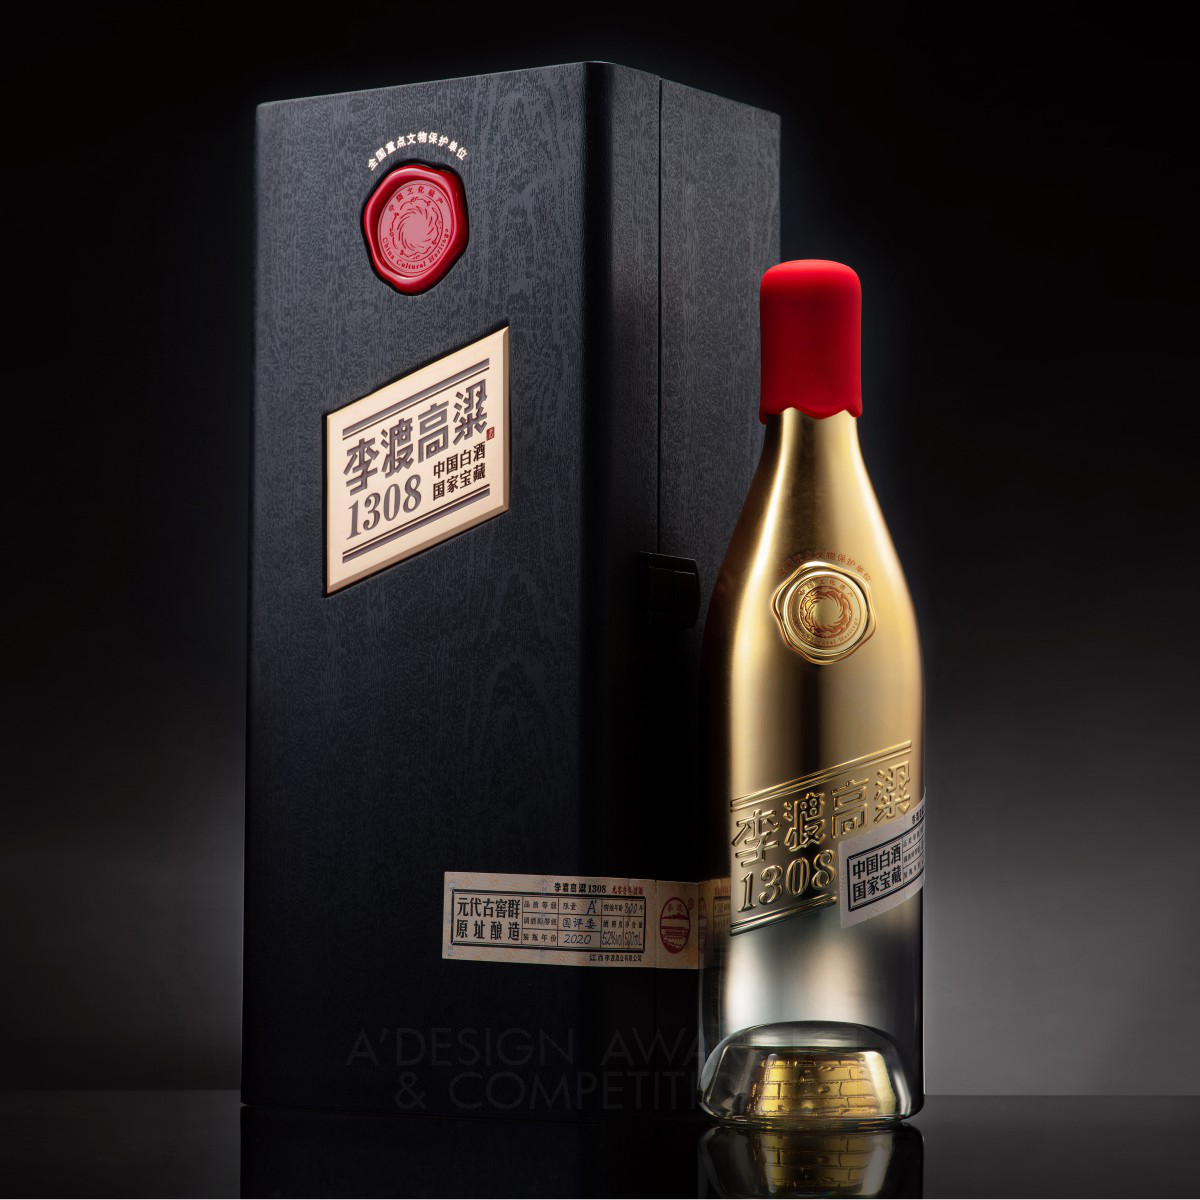 Lidu Sorghum 1308: Redefining Luxury in Alcoholic Beverage Packaging